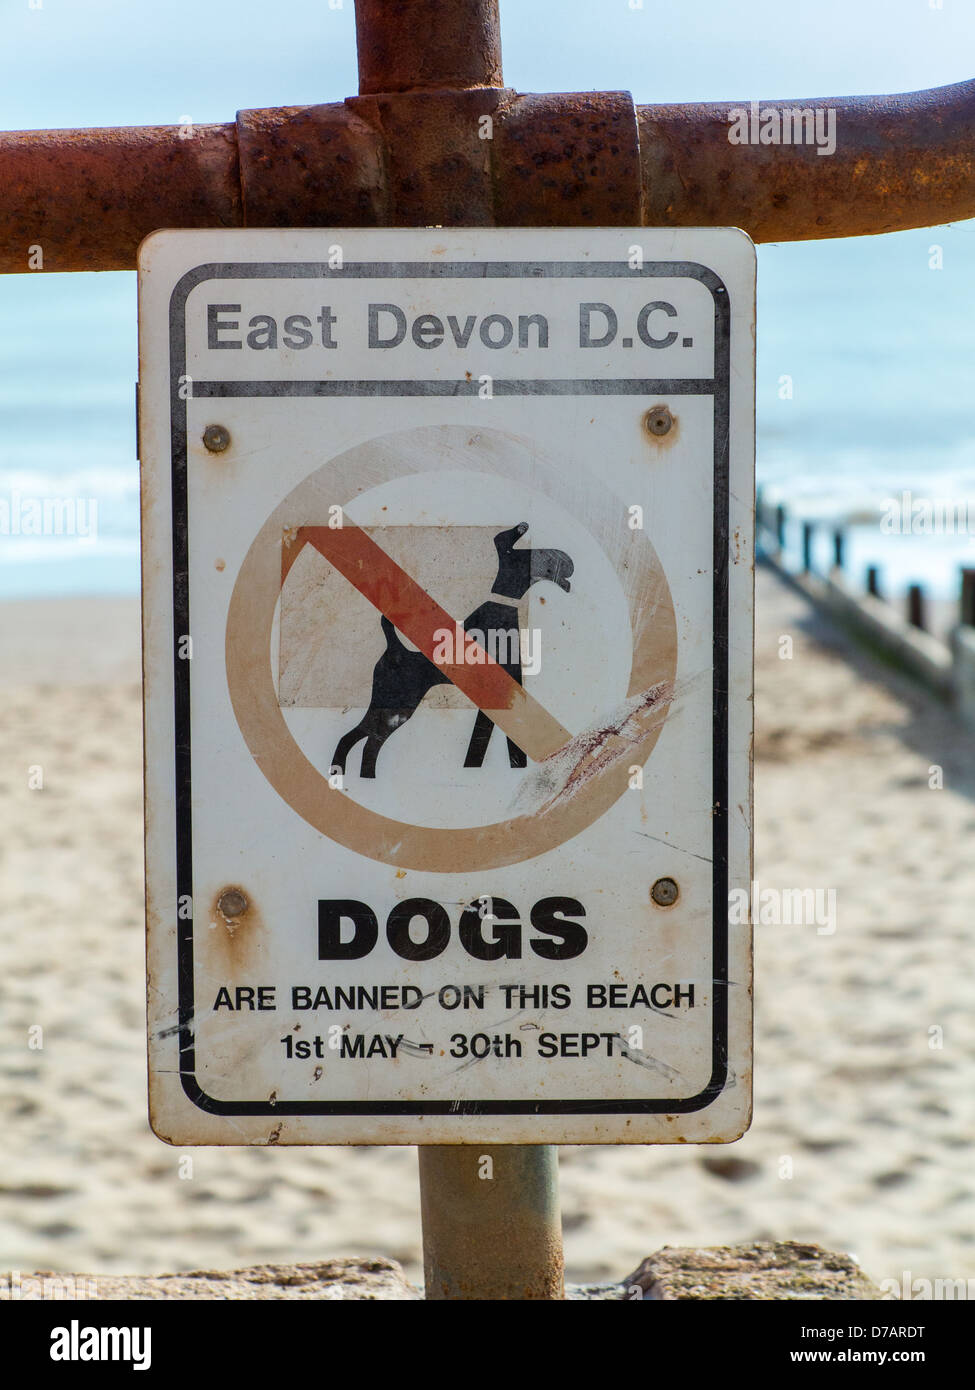 Chiens interdit de ce panneau indiquant la plage de dates sur la plage d'Exmouth, Devon, Angleterre Banque D'Images